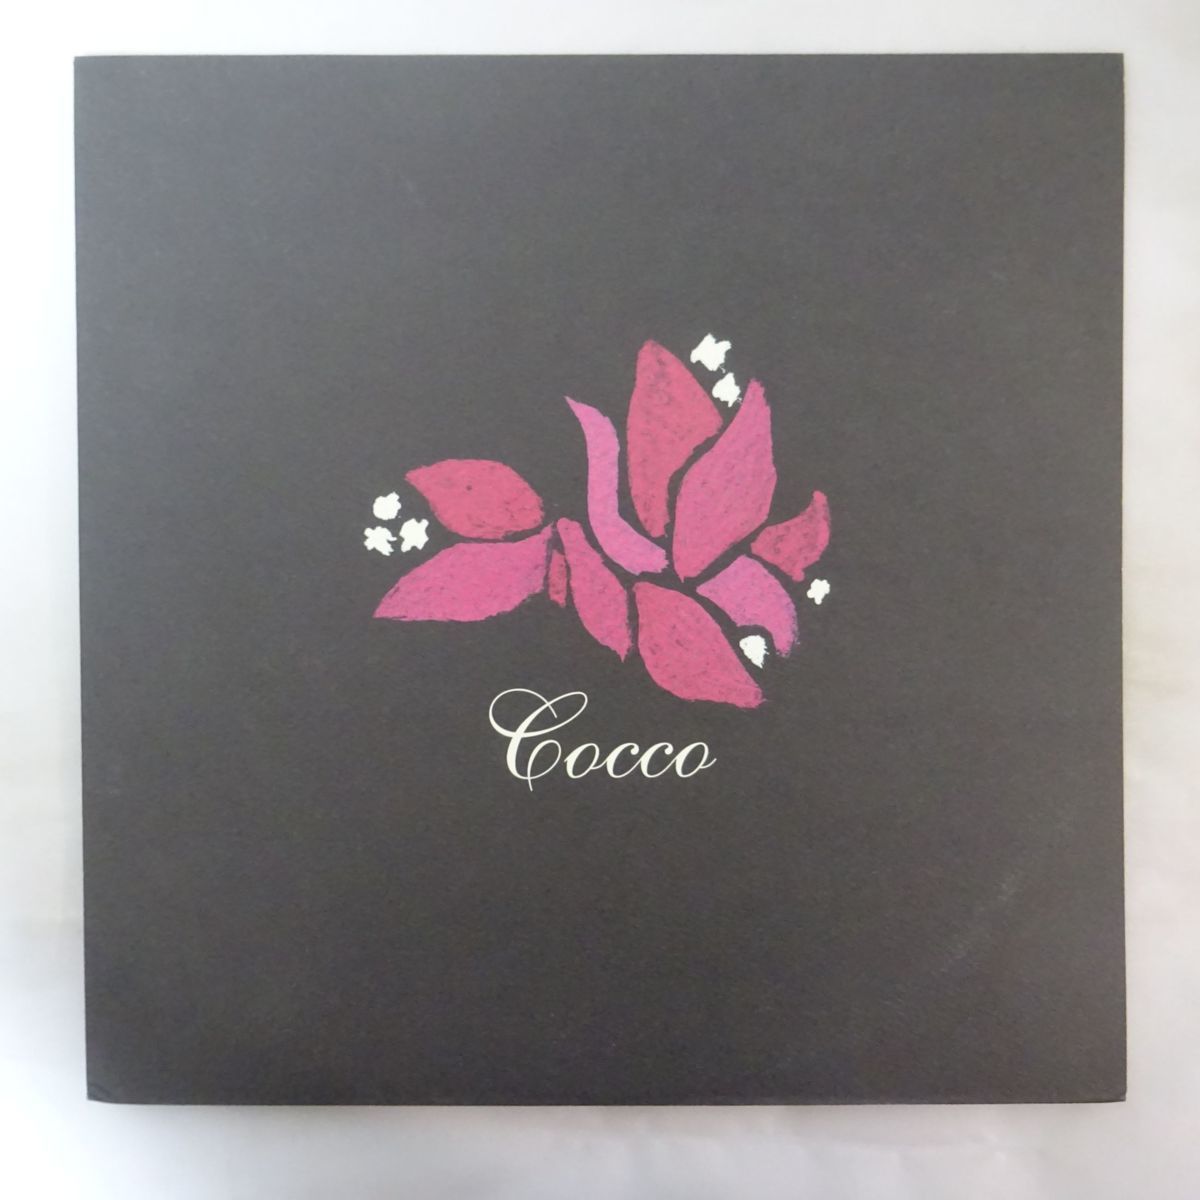 ヤフオク! -「cocco」(レコード) の落札相場・落札価格